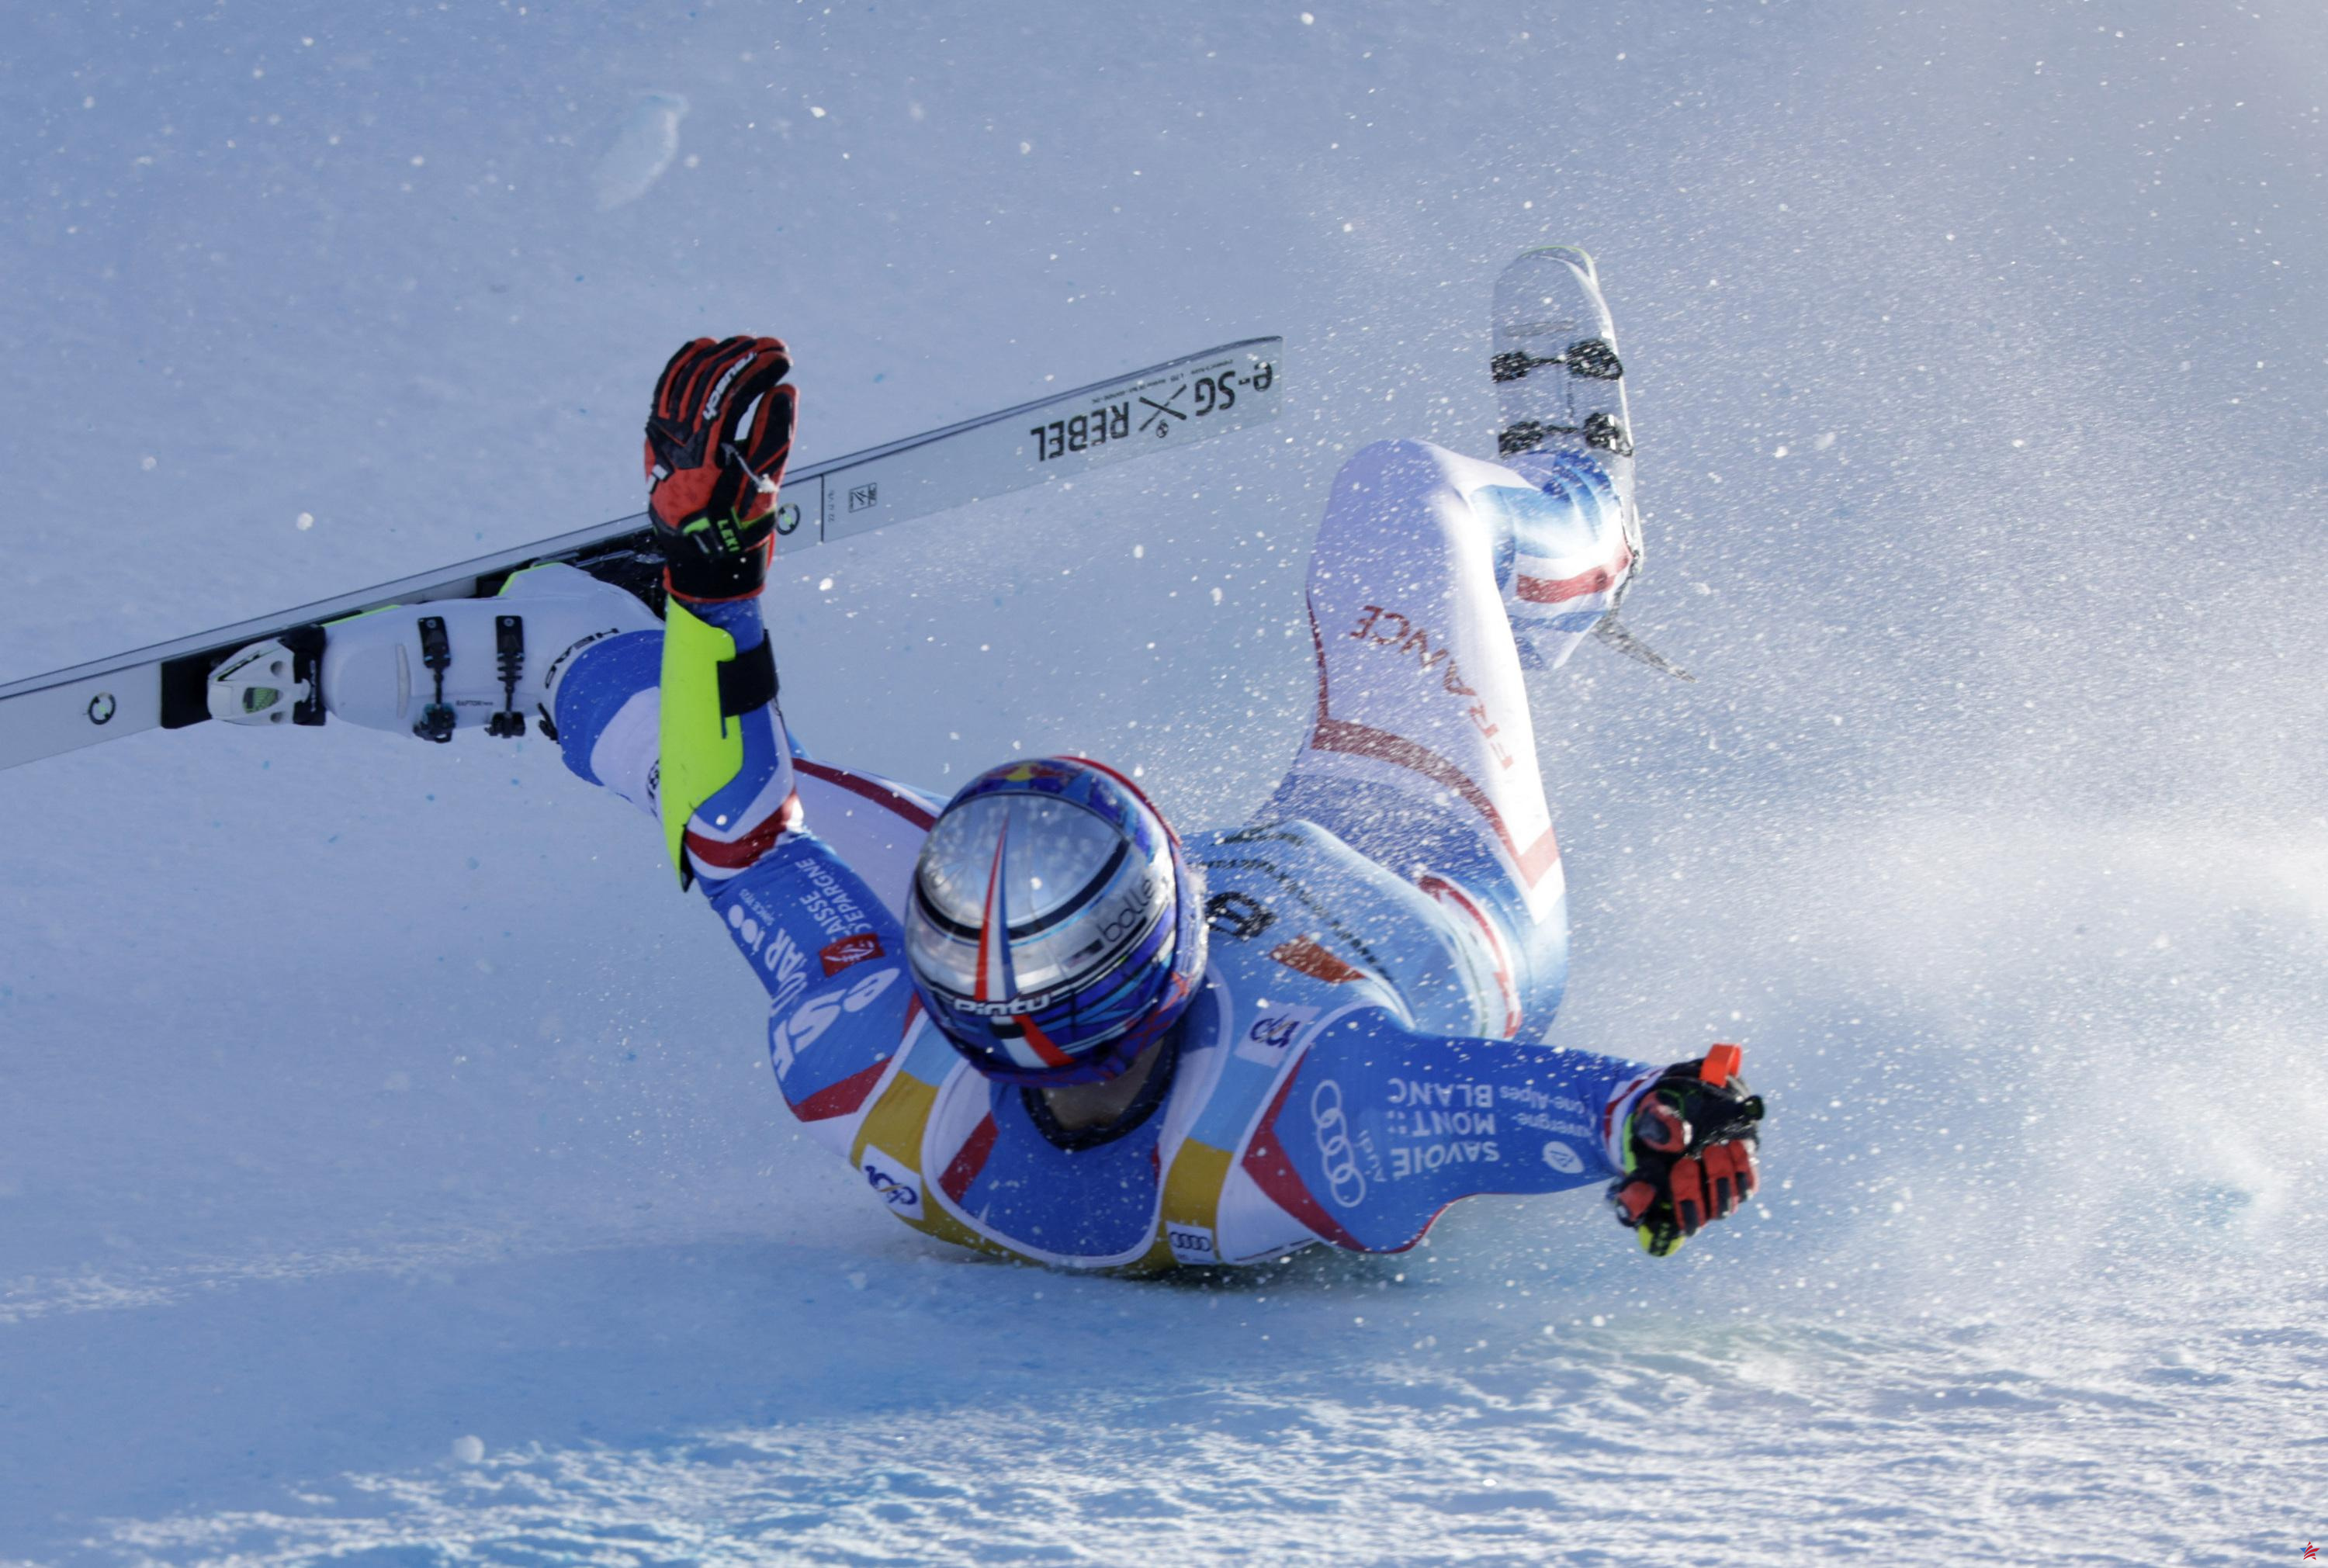 Esquí alpino: Alexis Pinturault cae con fuerza en el super-G de Wengen